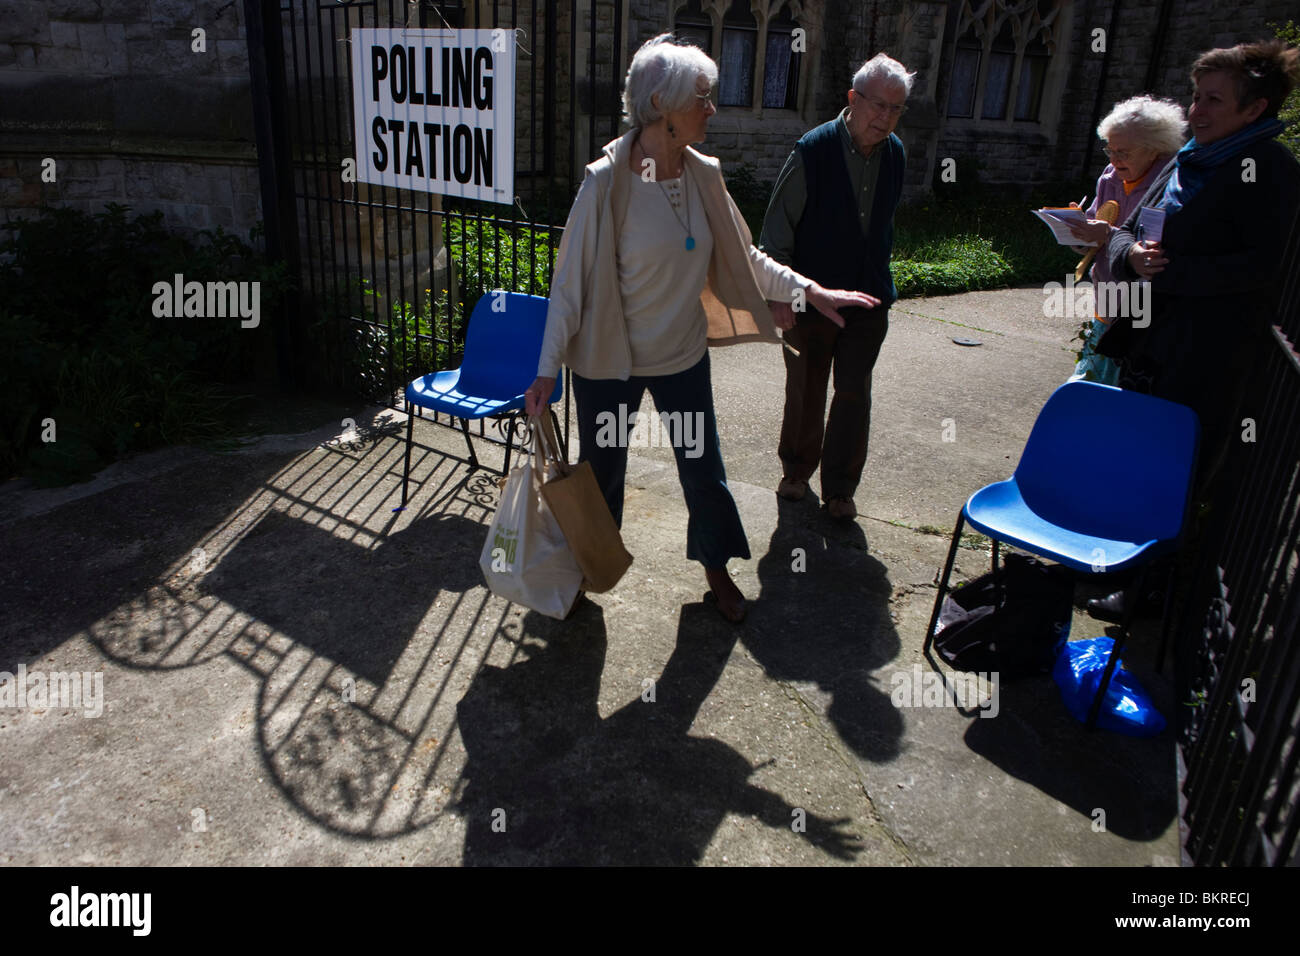 Deux scrutateurs log l'élection numéros et adresses des électeurs à leur sortie de scrutin Banque D'Images